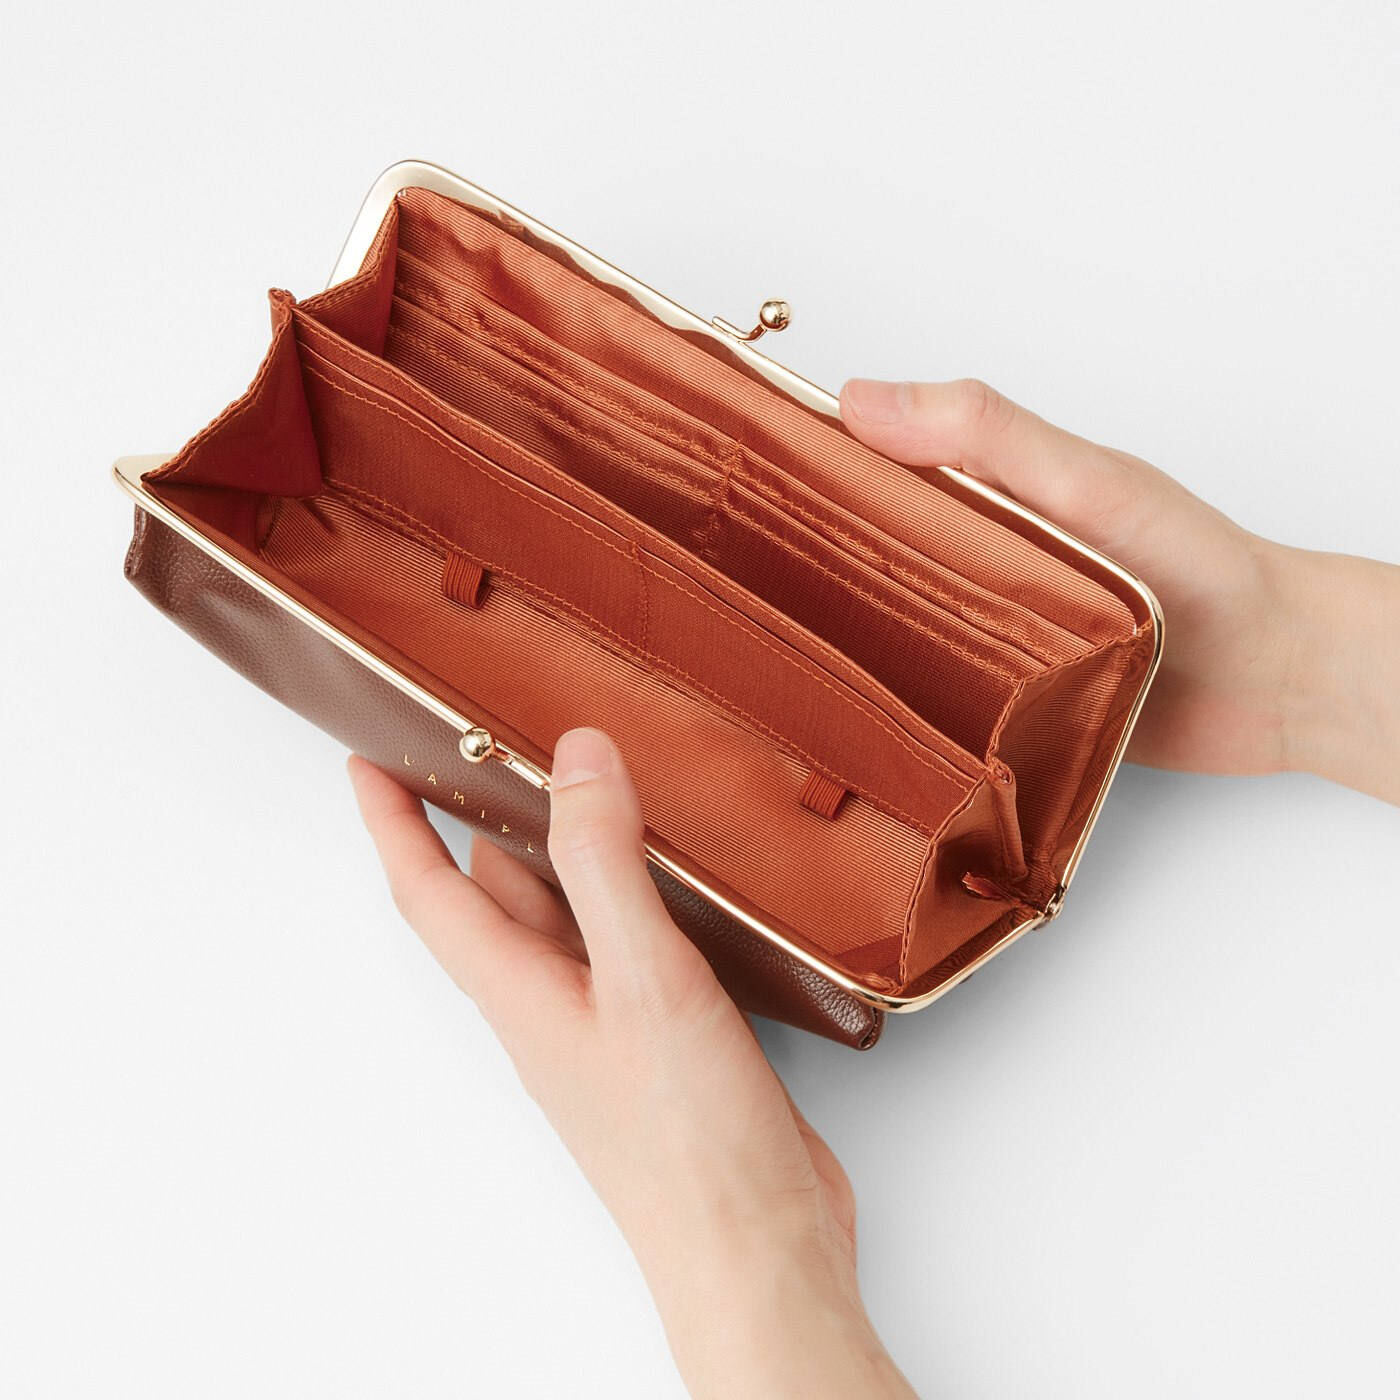 Real Stock|ラミプリュス　片手でパチンと開けられる コインスルーがま口財布|カードが片側にそろっていて、コインケースががばっと開いて取り出しやすい。